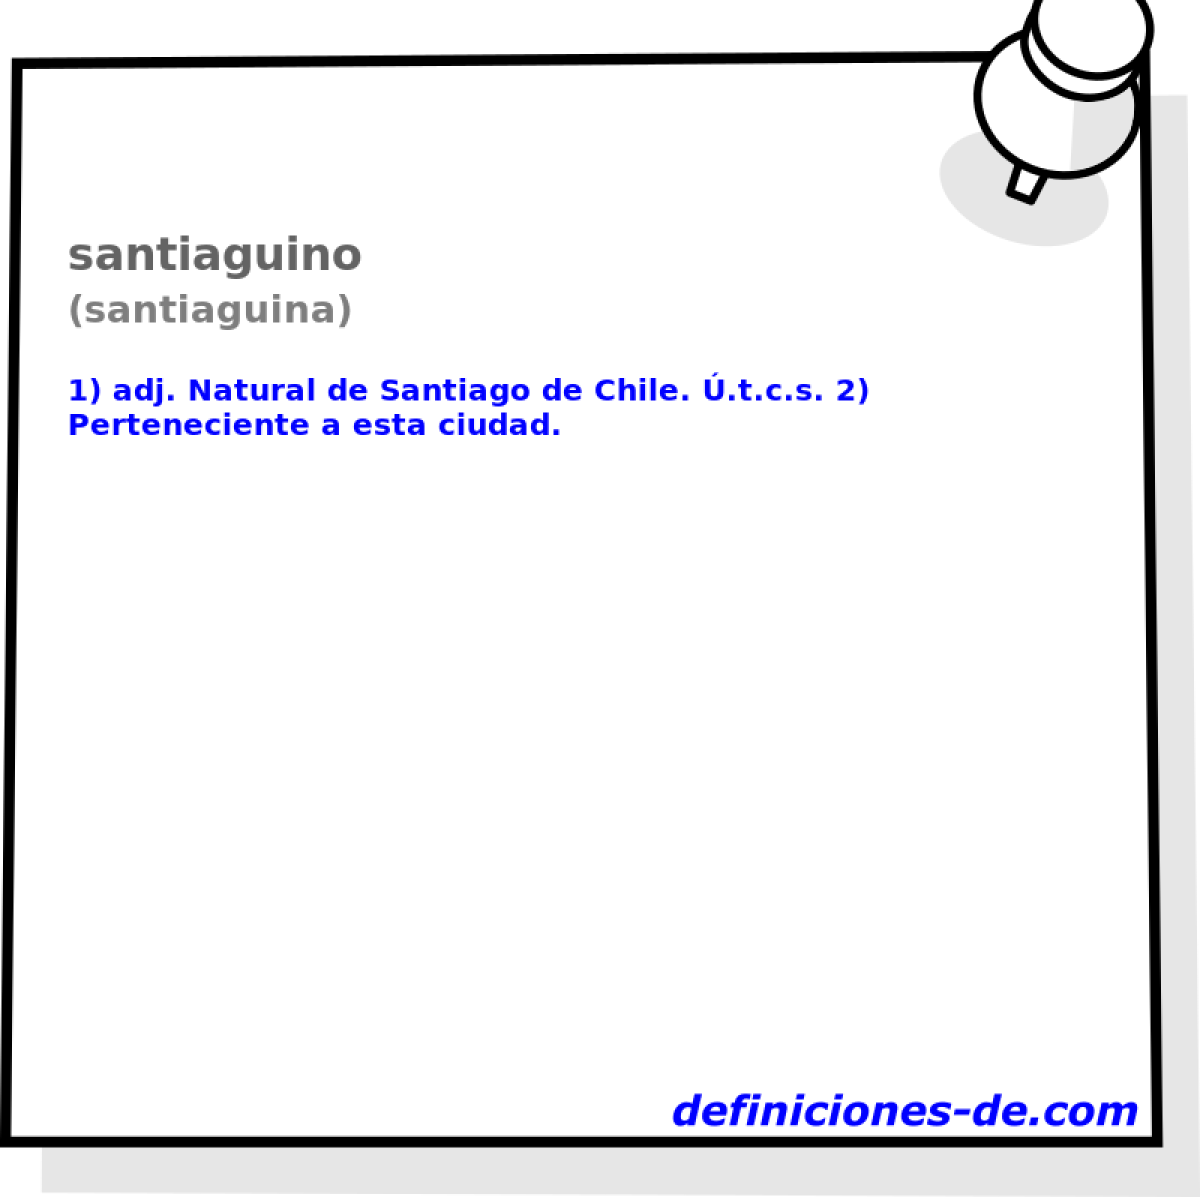 santiaguino (santiaguina)